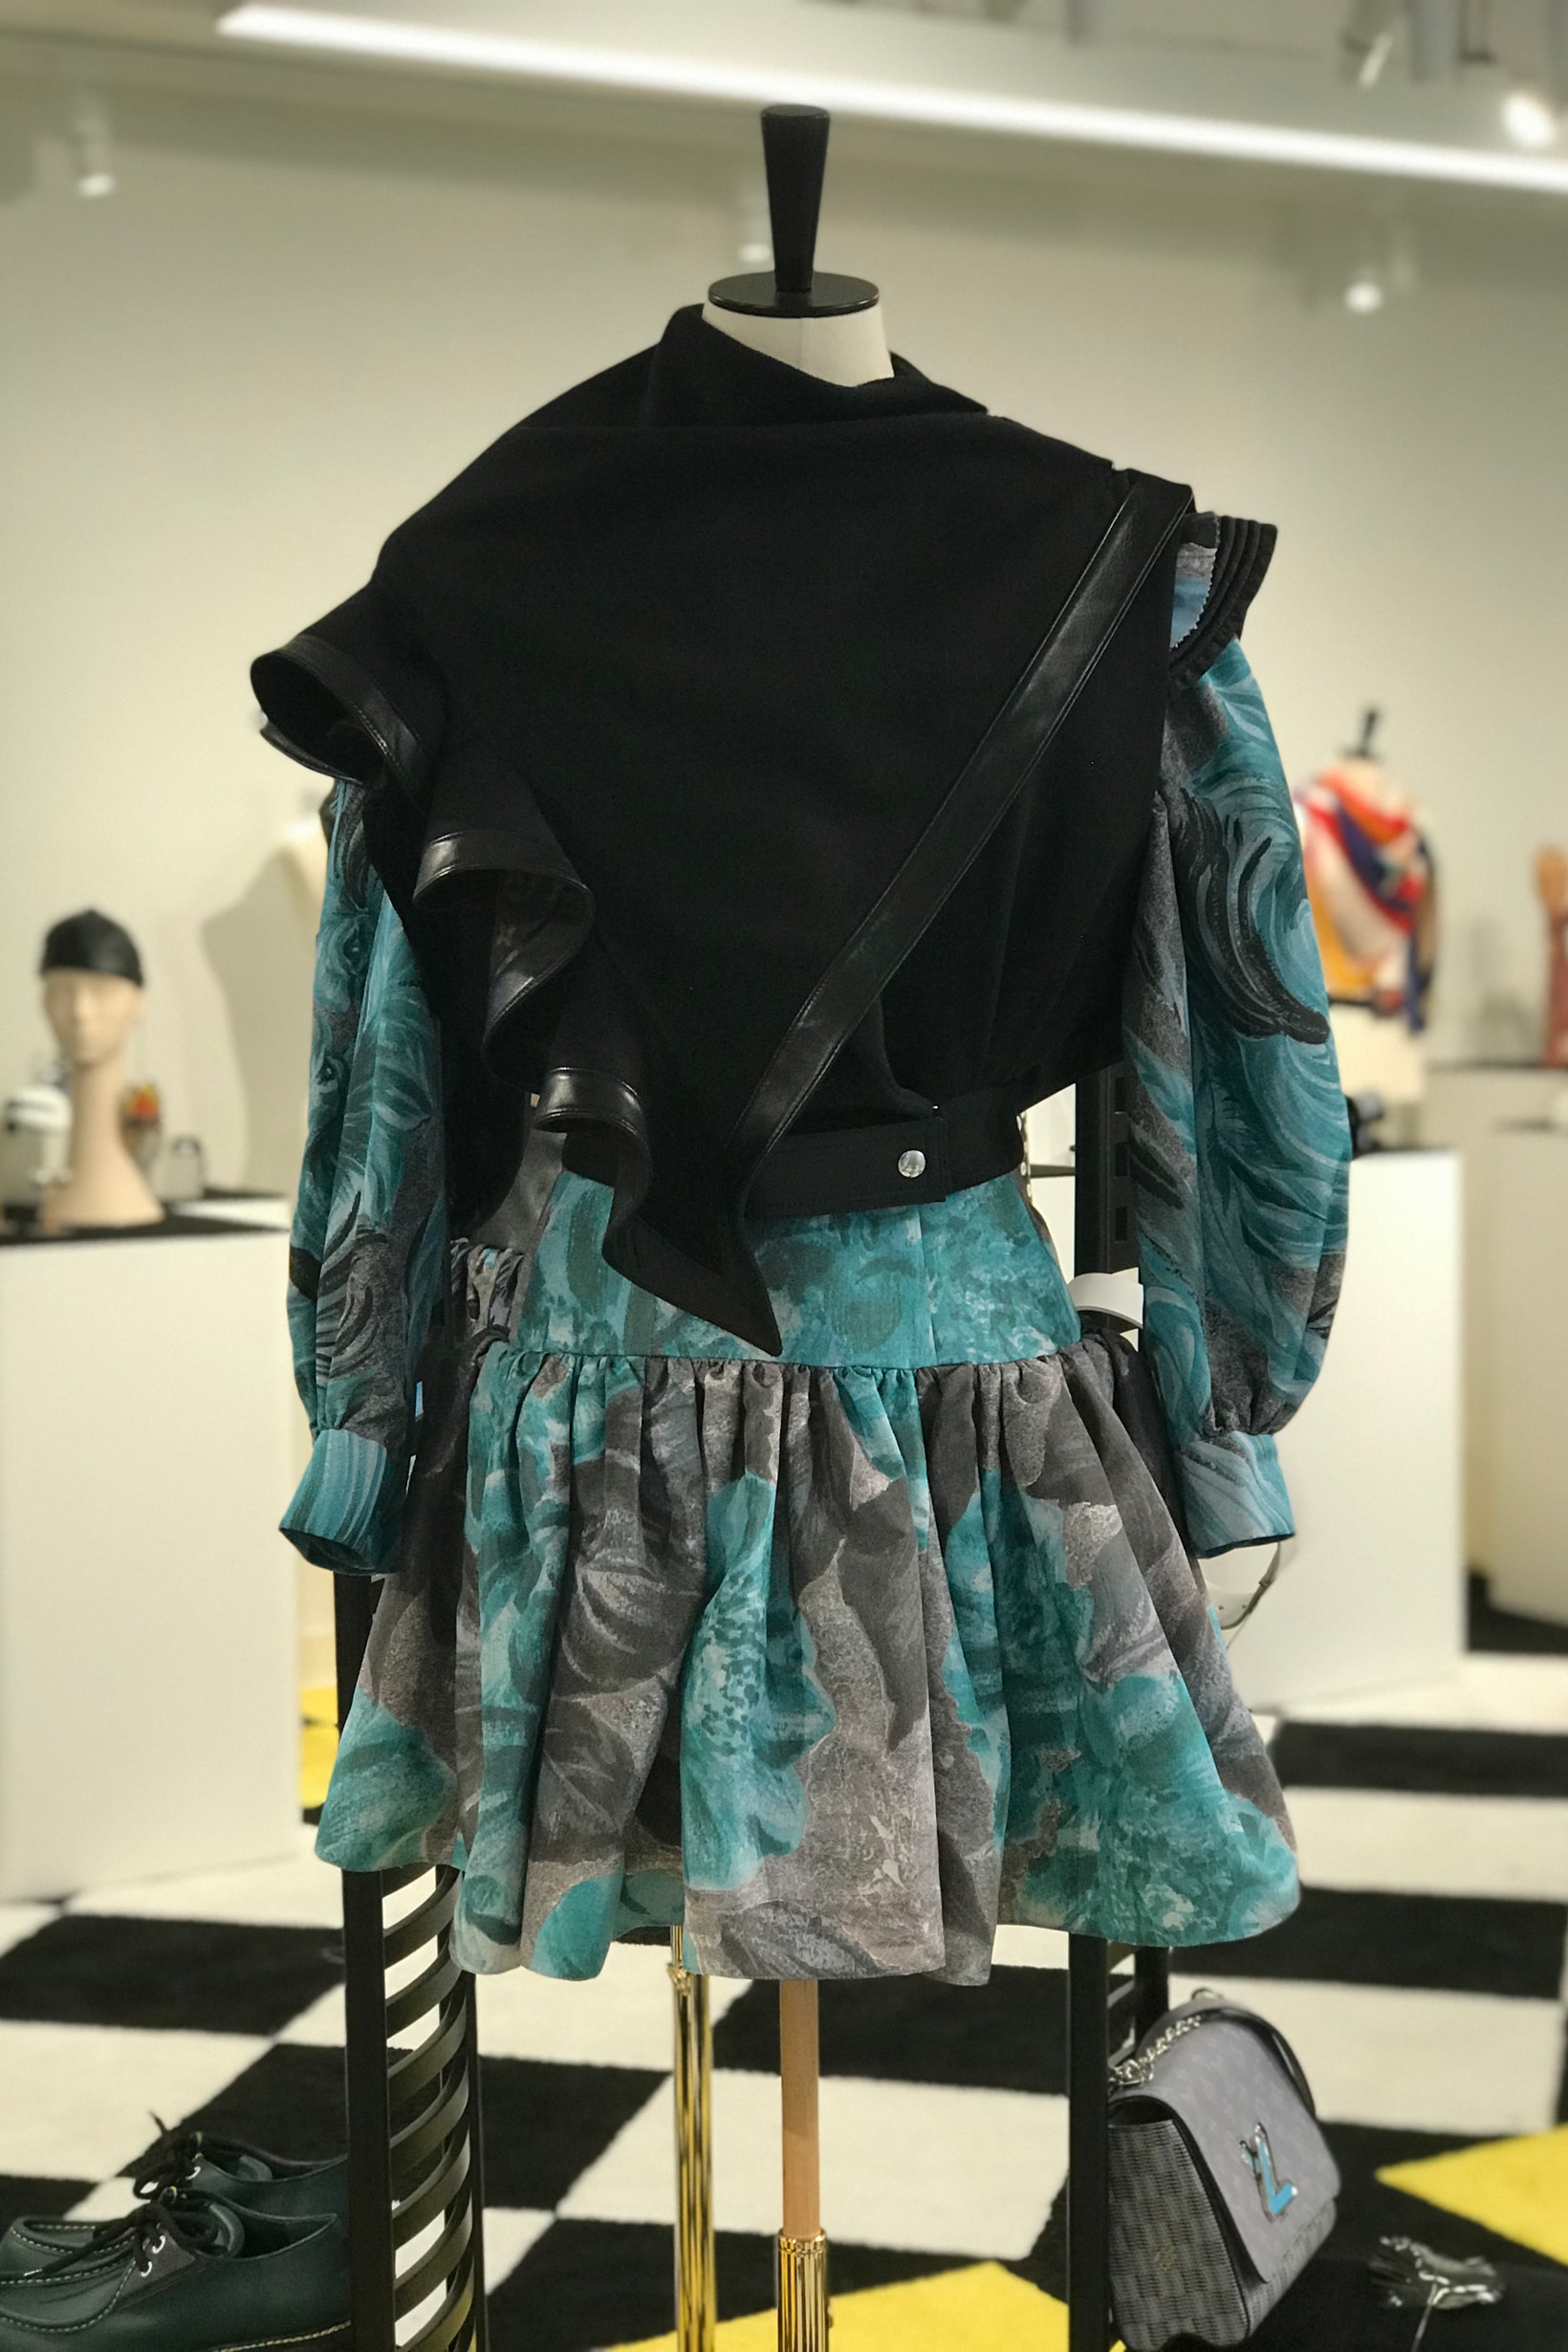 Louis Vuitton Fall Winter 2019 Closer Look Jacket Black Skirt Teal